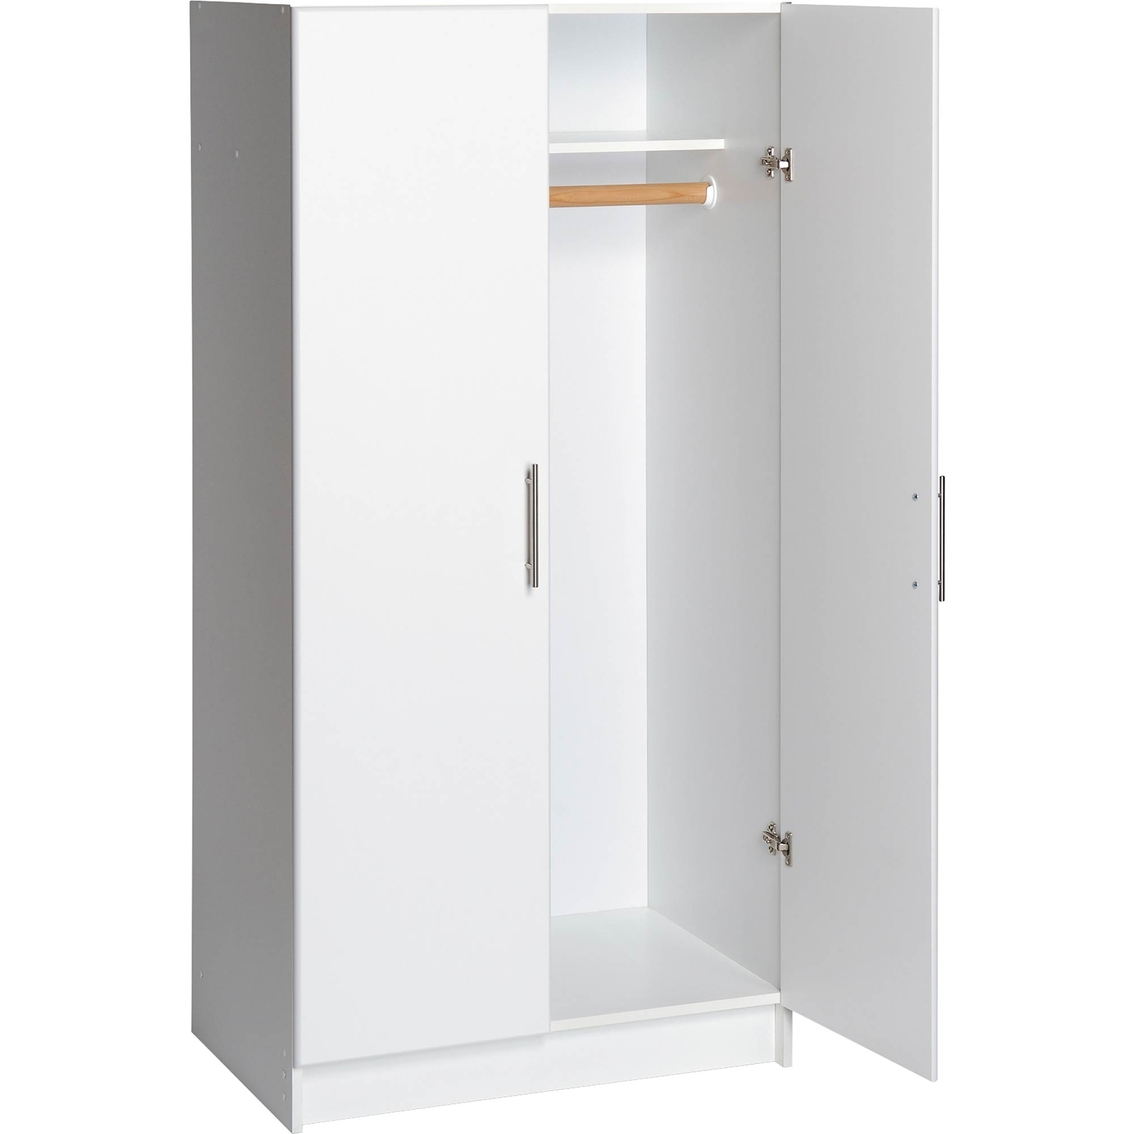 Prepac Elite 32 in. Wardrobe Cabinet - Image 2 of 3